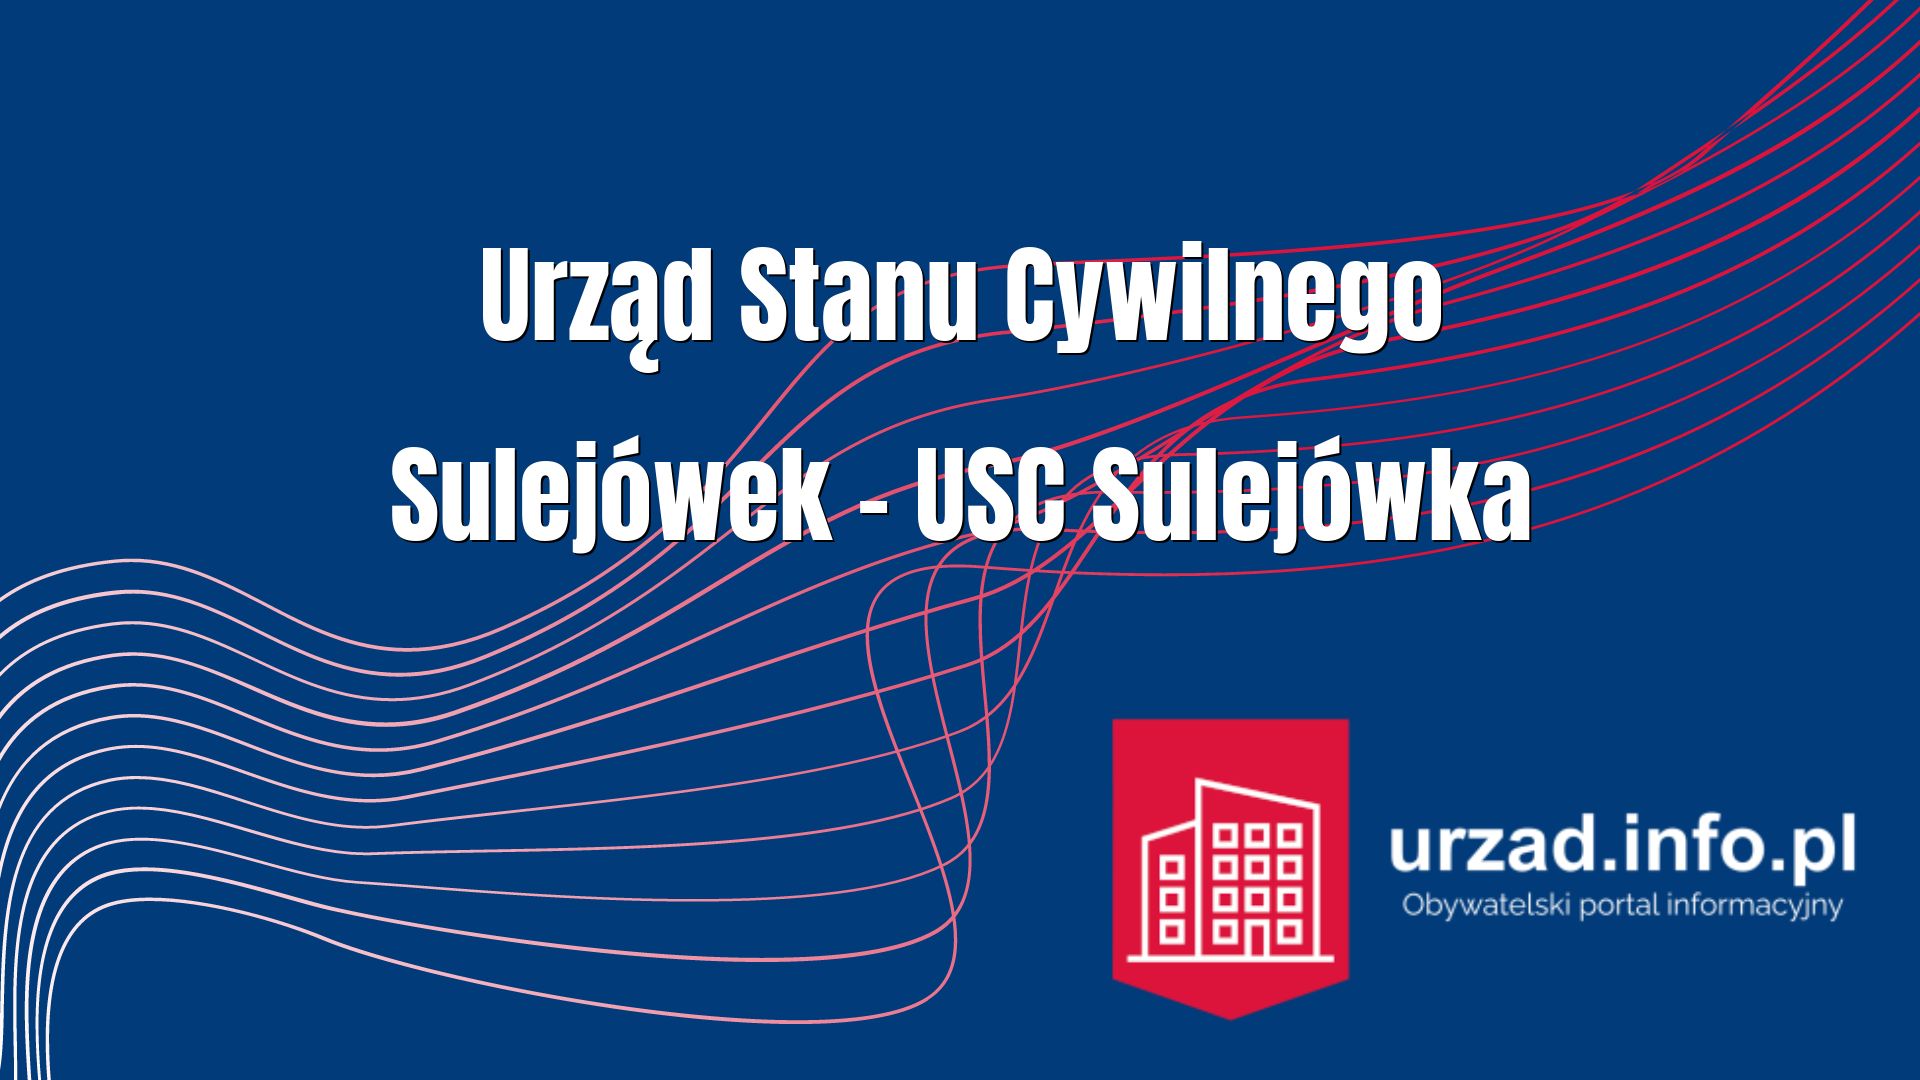 Urząd Stanu Cywilnego Sulejówek – USC Sulejówka